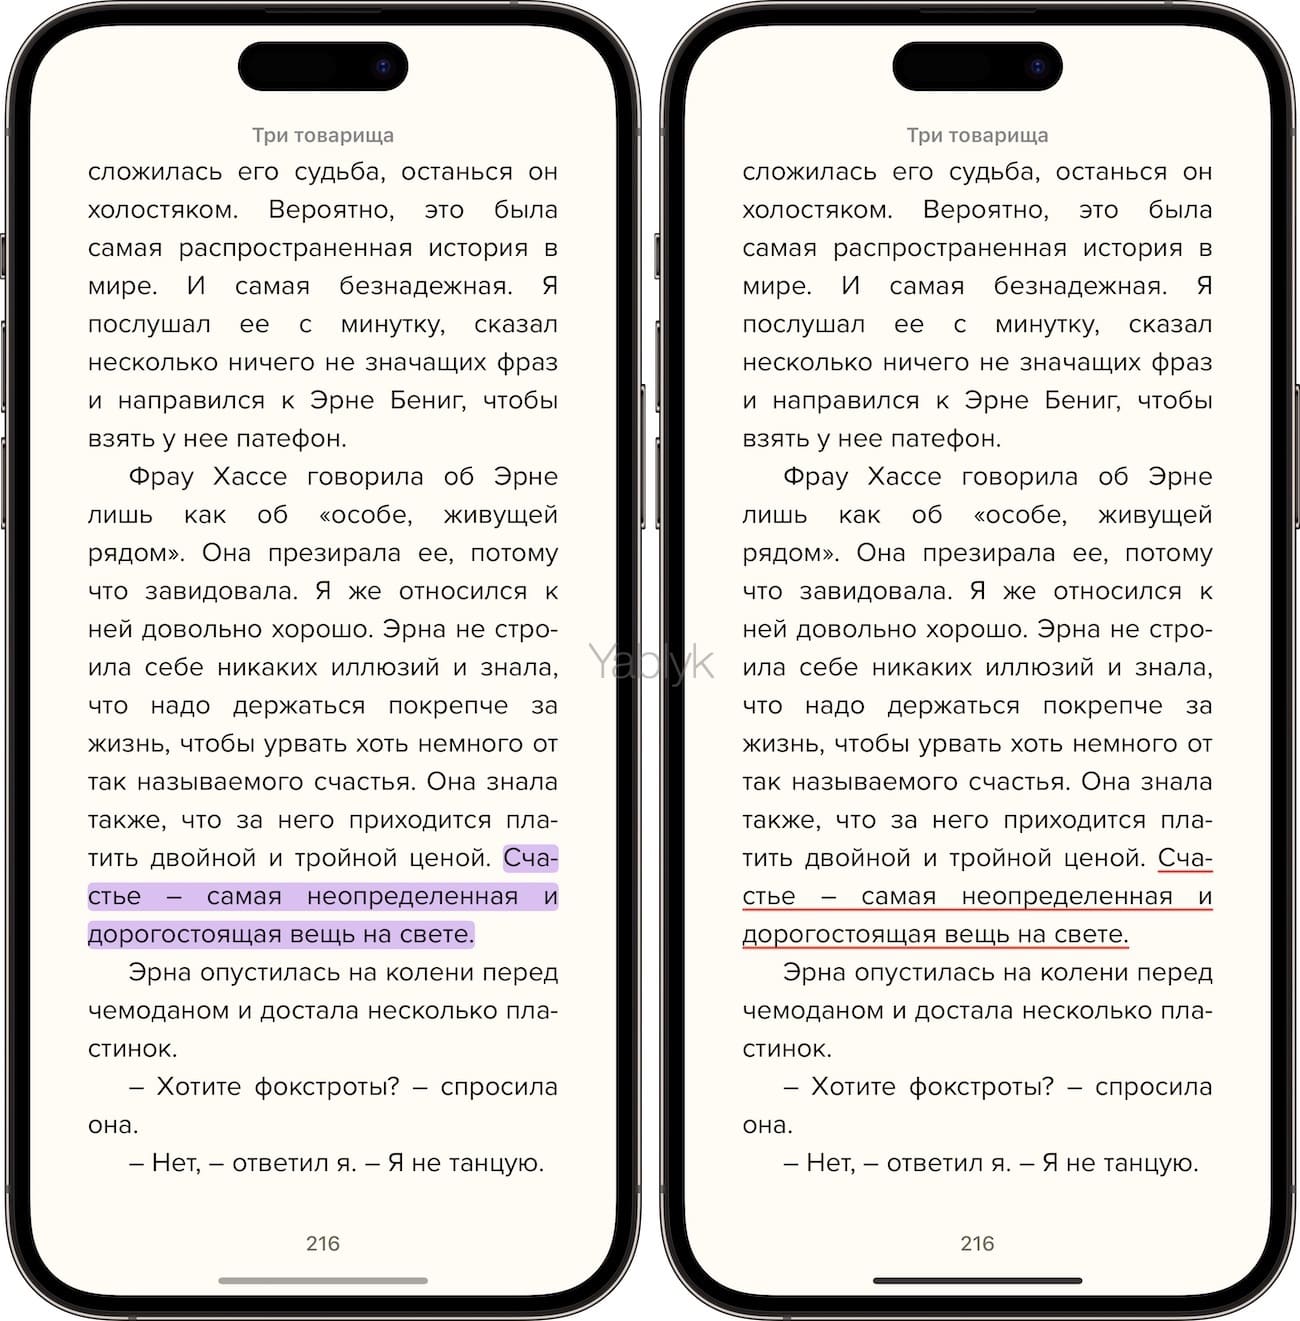 Сохранение выделенных фрагментов текста в приложении "Книги" на iPhone